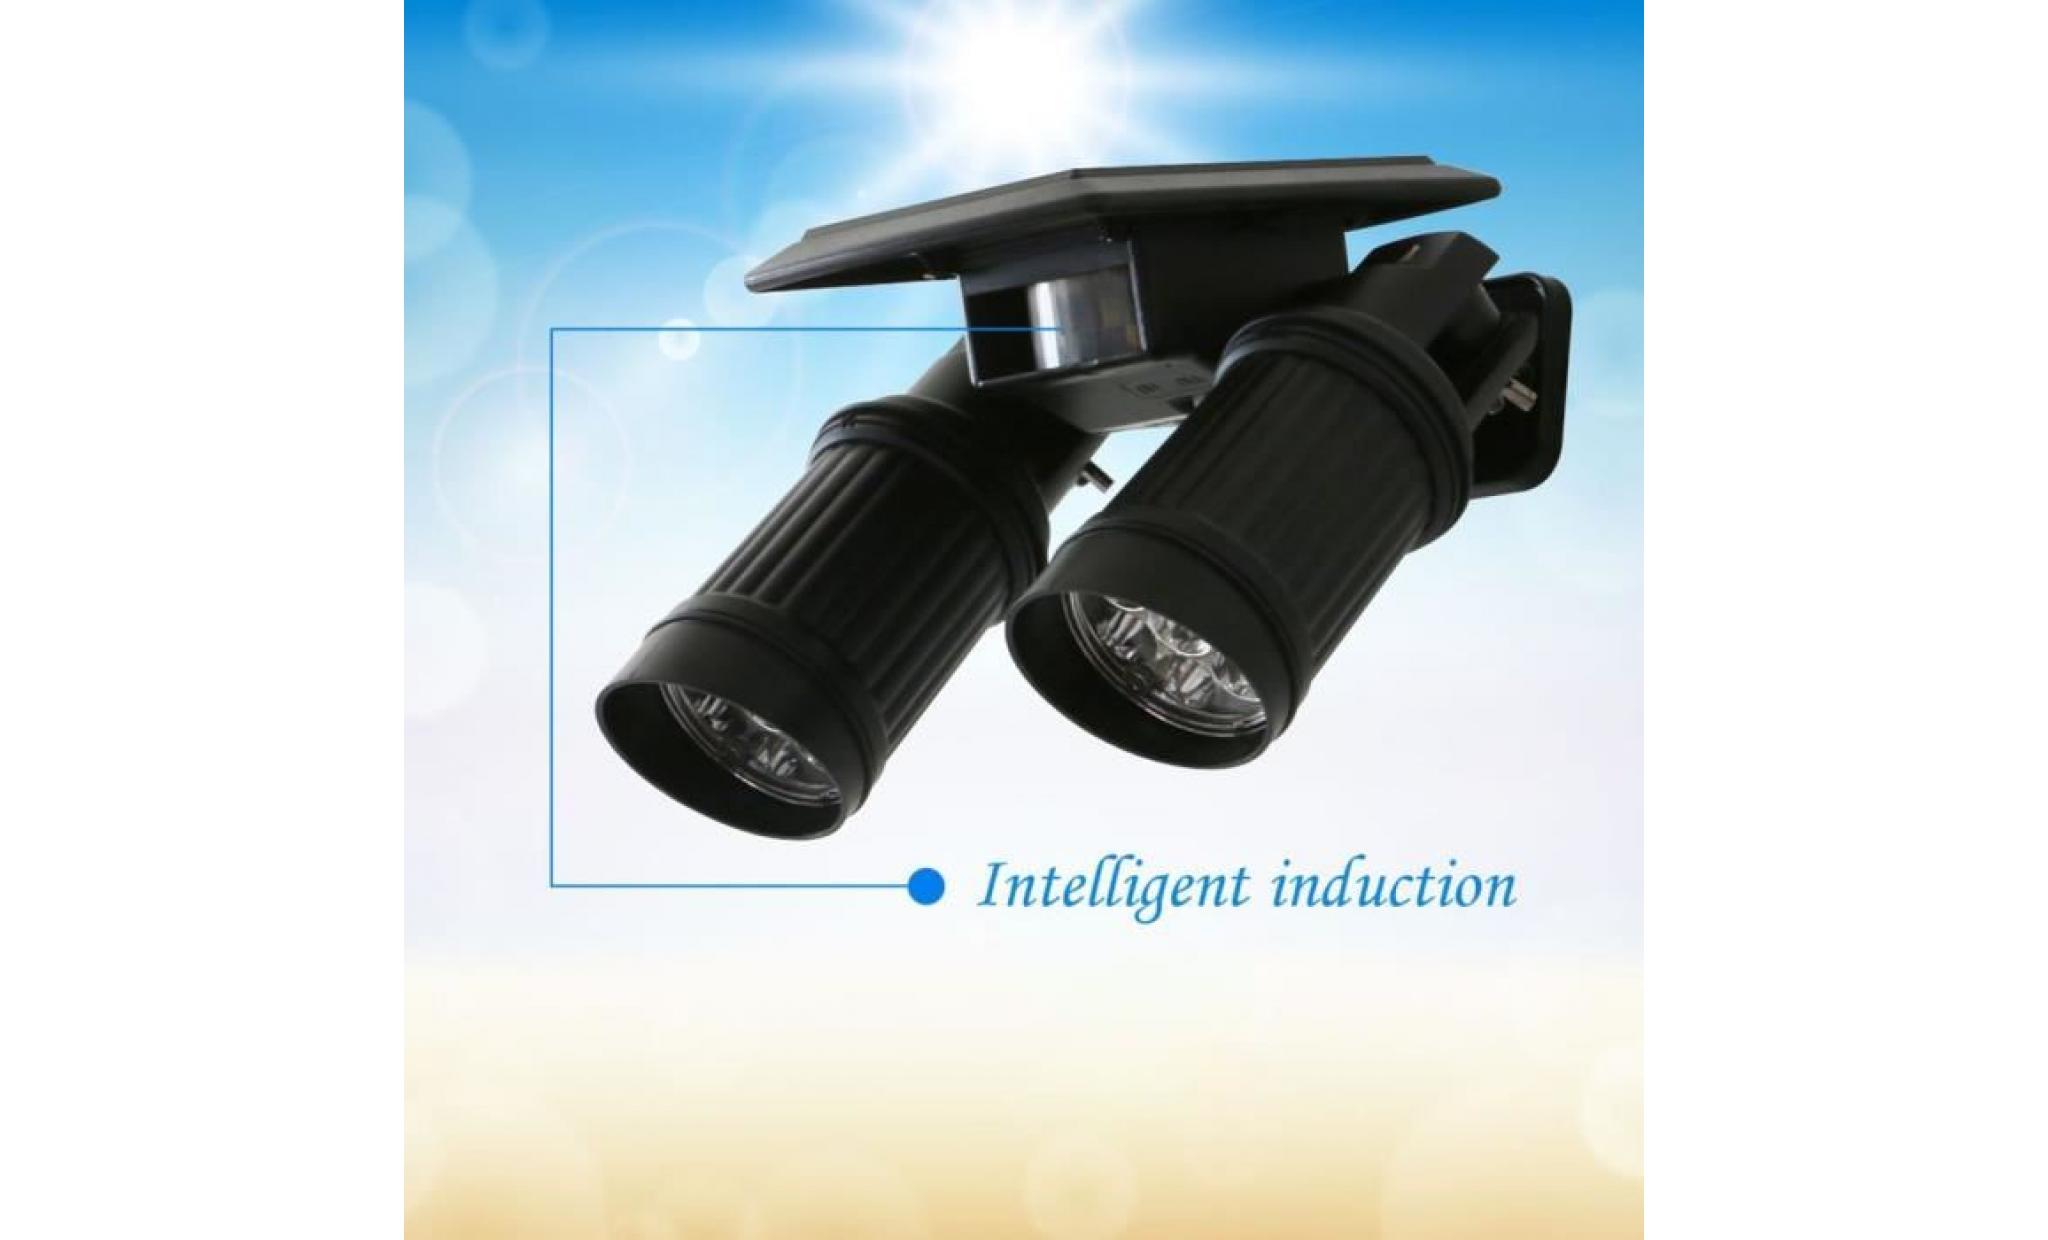 120lm lampe d'énergie solaire led induction infrarouge induction lumière contrôle lampe jardin lampe cour